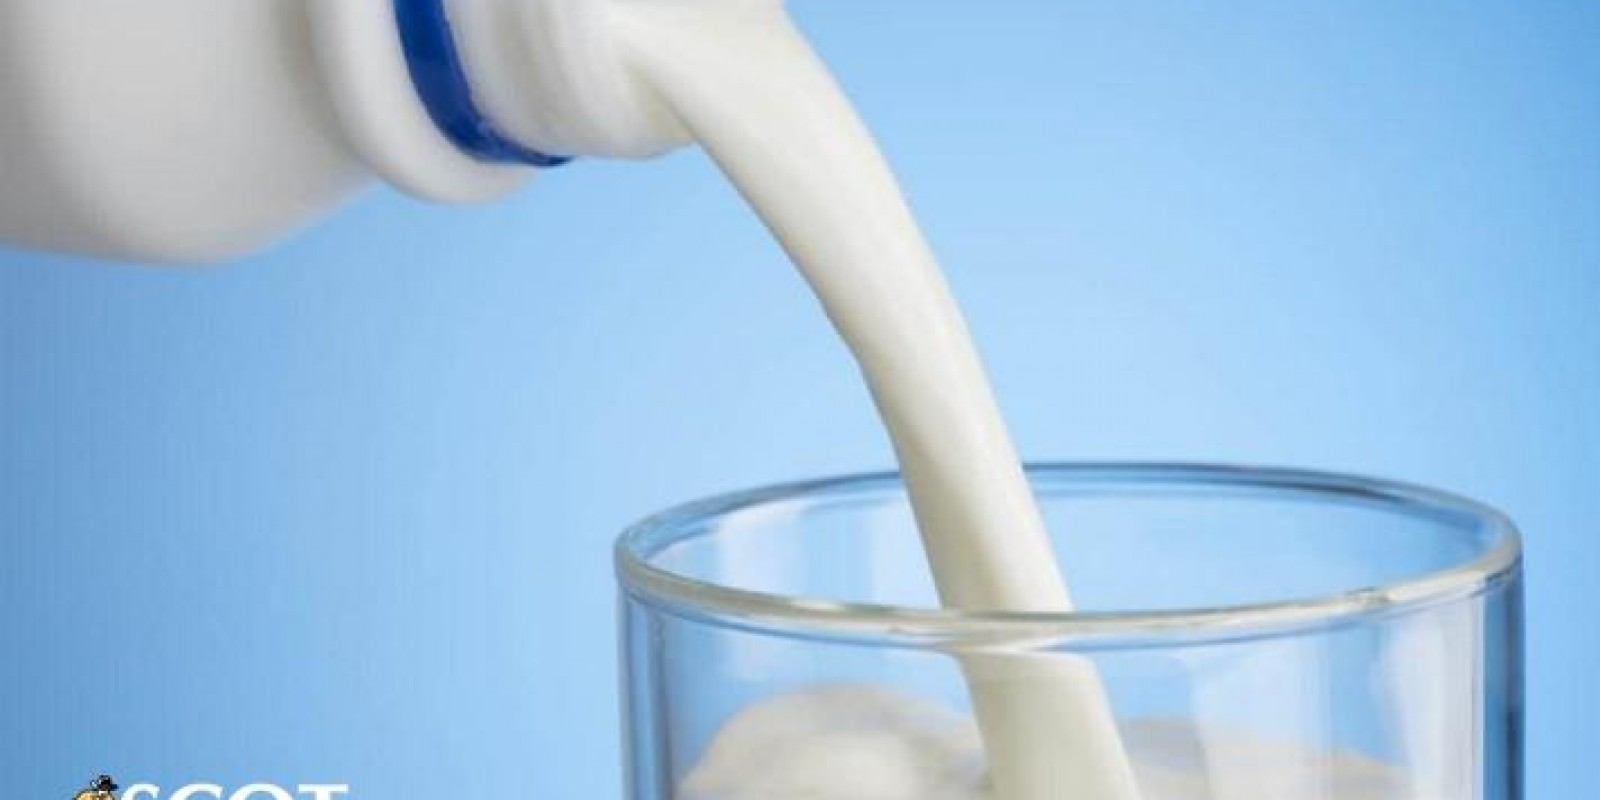 Recuos nas cotações do leite longa vida